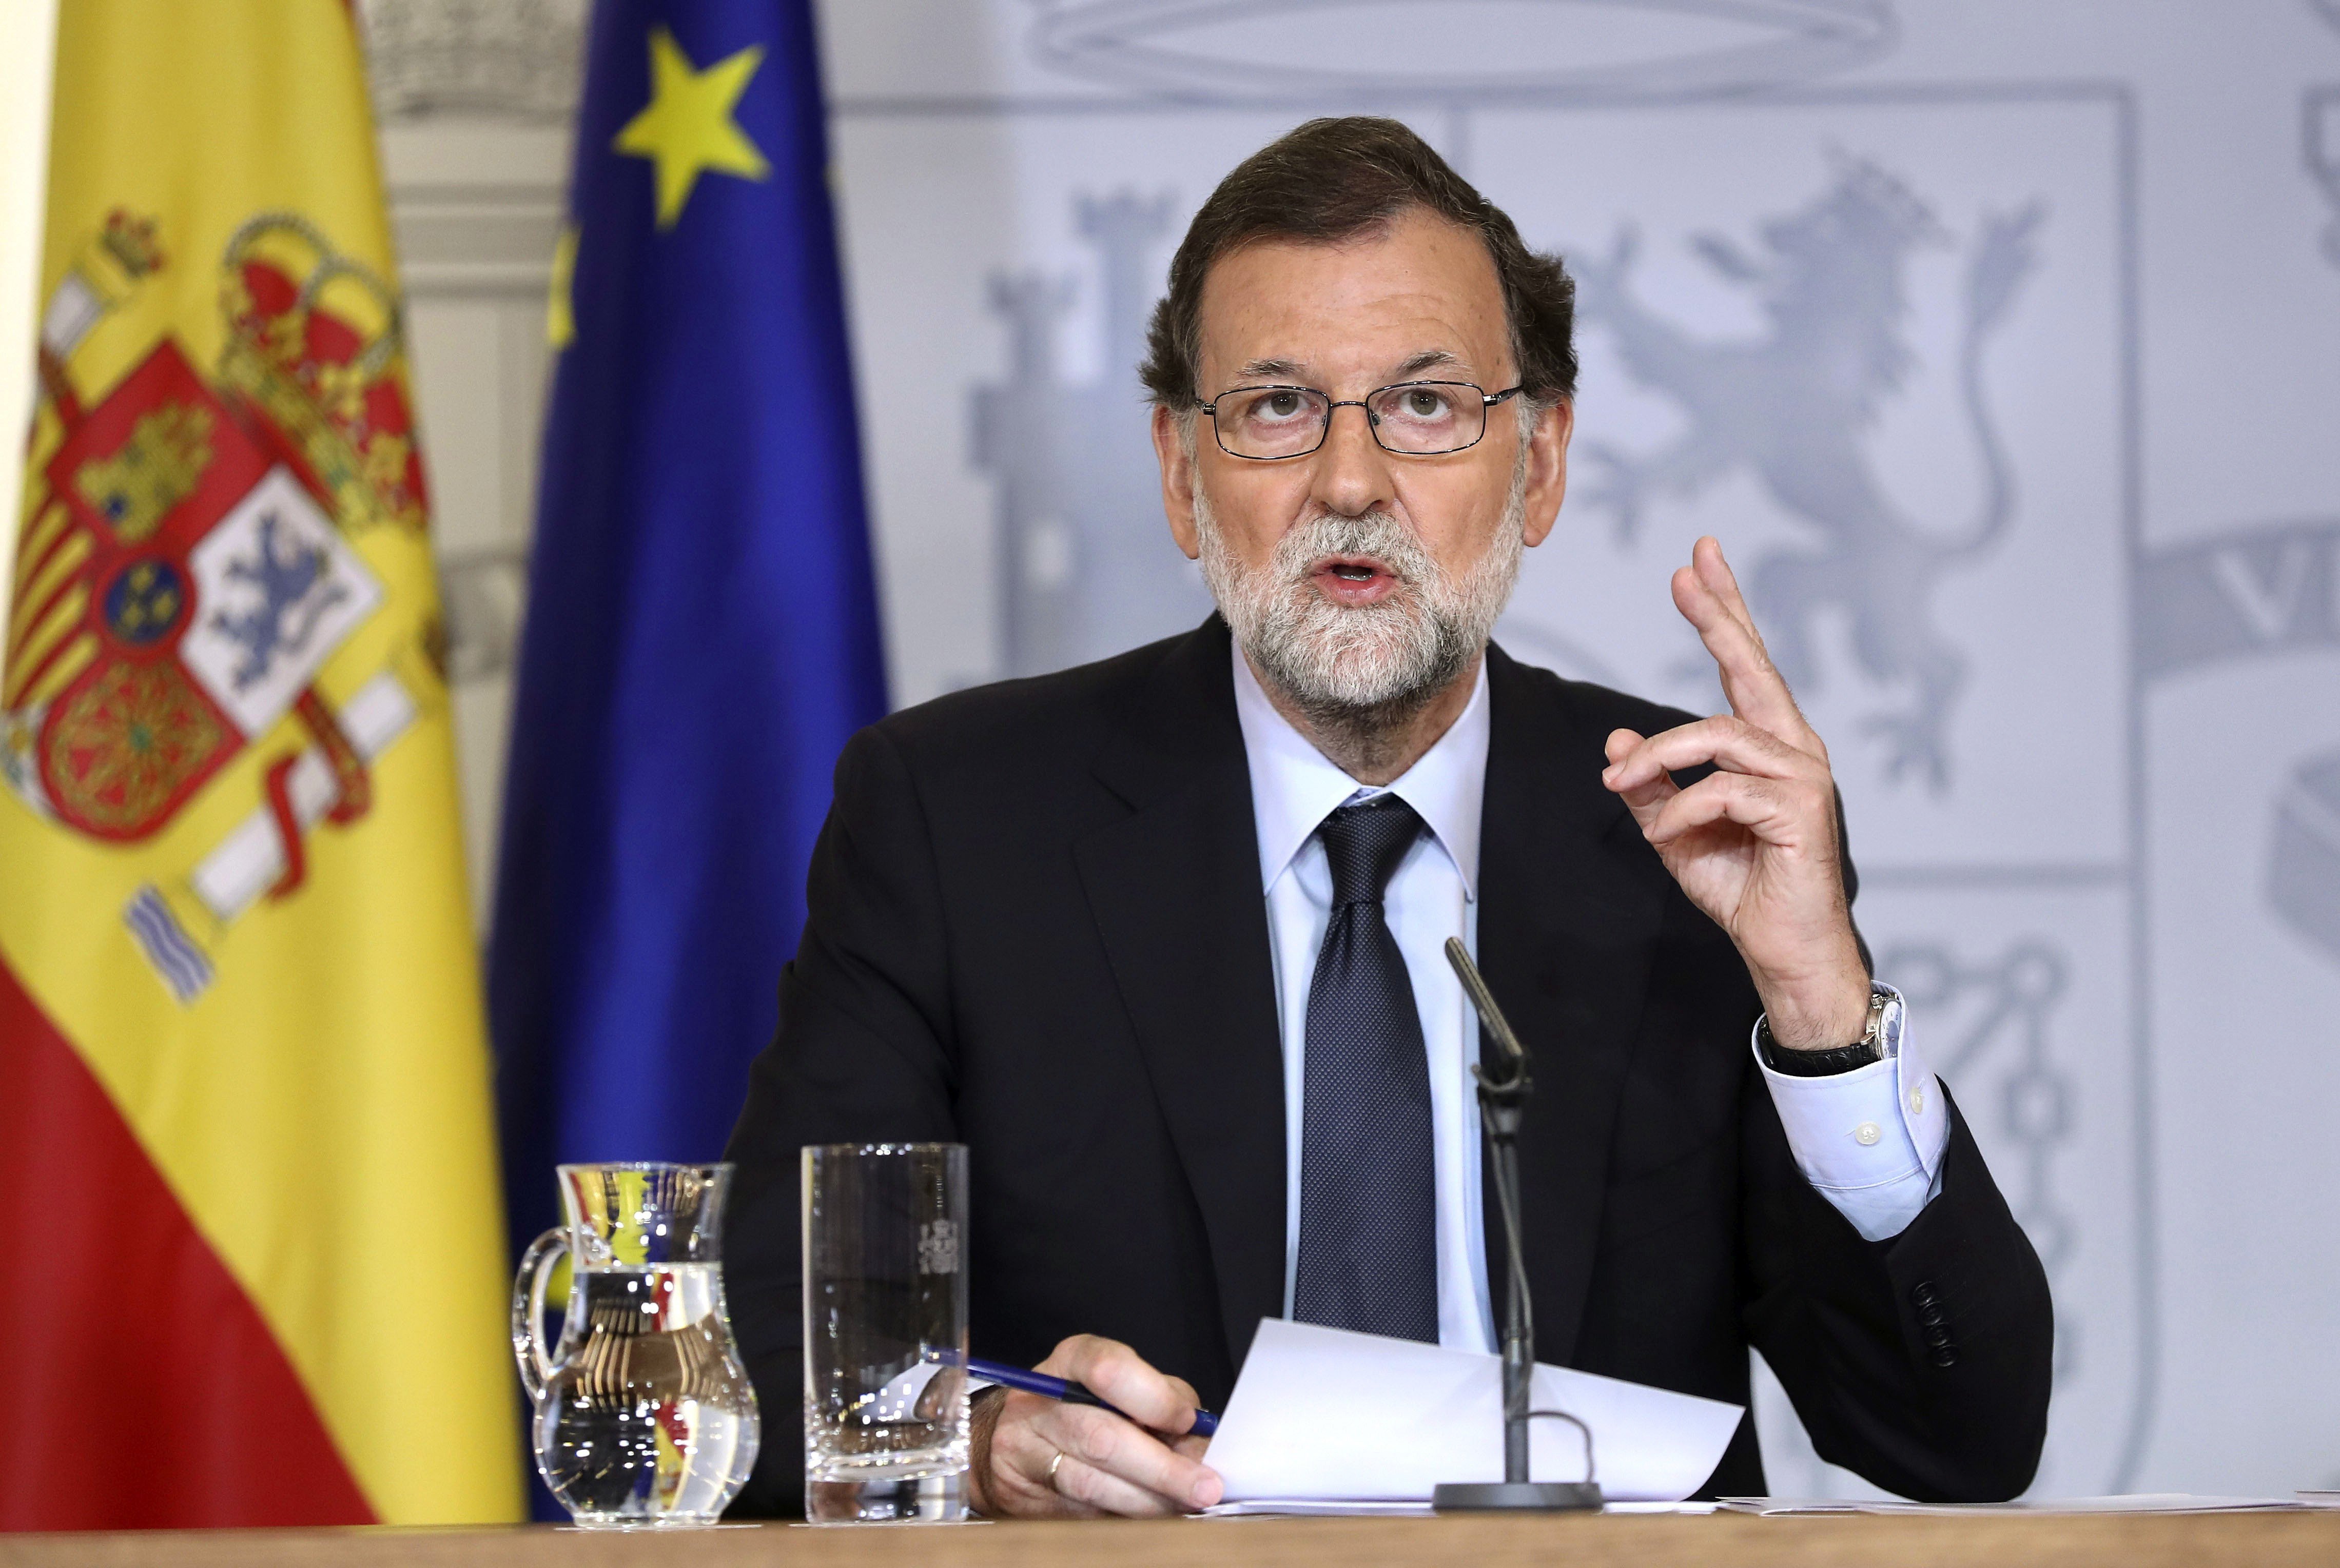 Rajoy intenta desactivar la idea que l'Estat va desaparèixer de Catalunya el 17-A